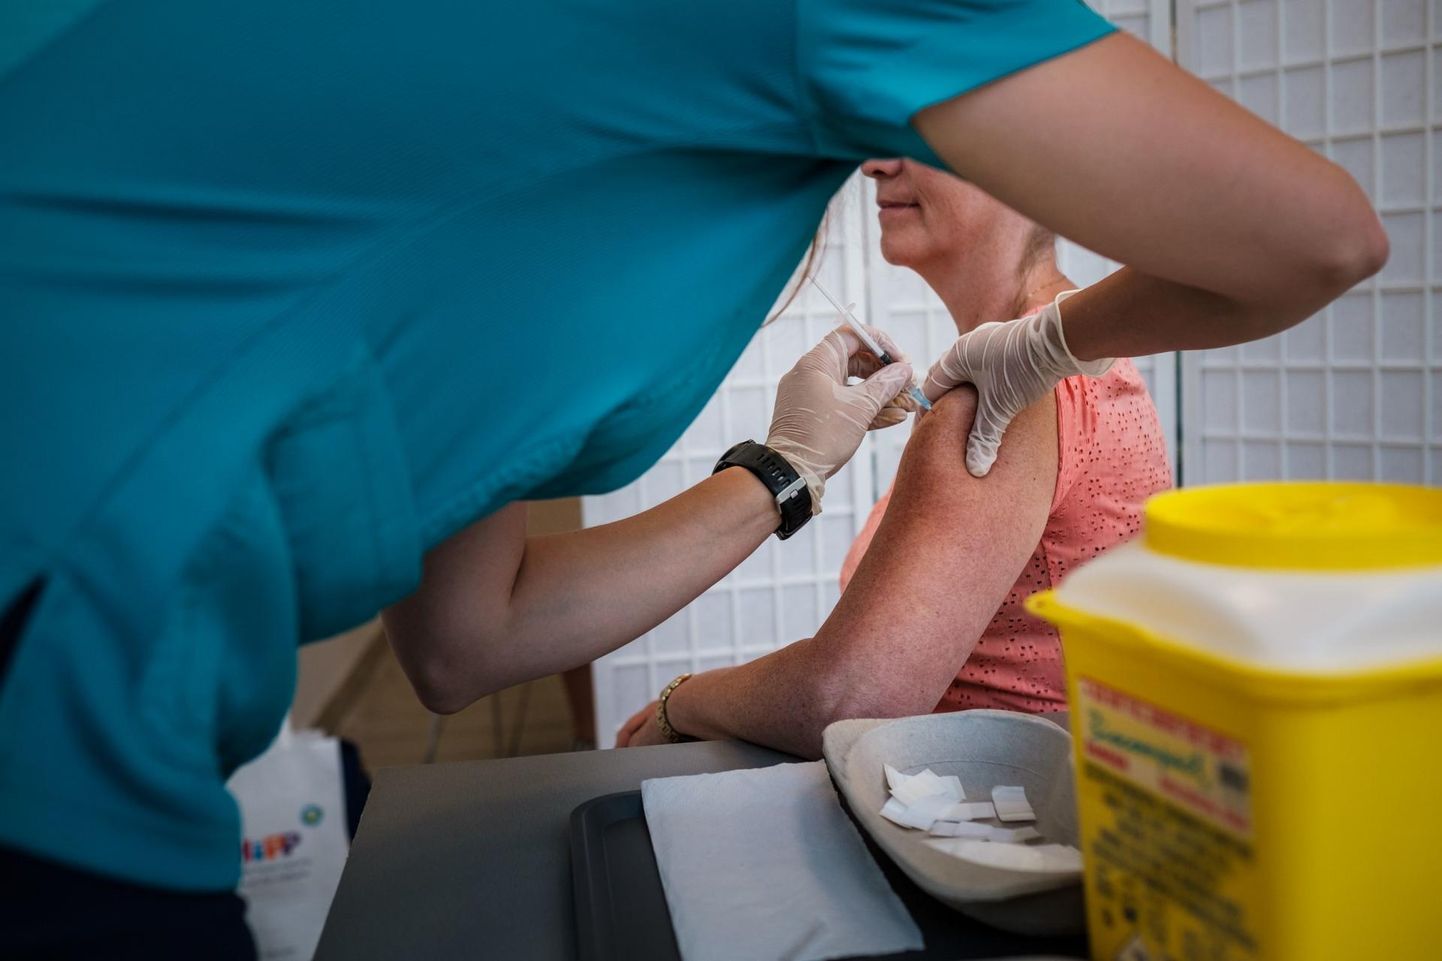 Viljandimaale lisandus ööpäevaga 20 koroonaviirusesse nakatunud inimest. Eestis on lõpetatud koroonaviirusevastane vaktsineerimiskuur 626 234 inimesel.